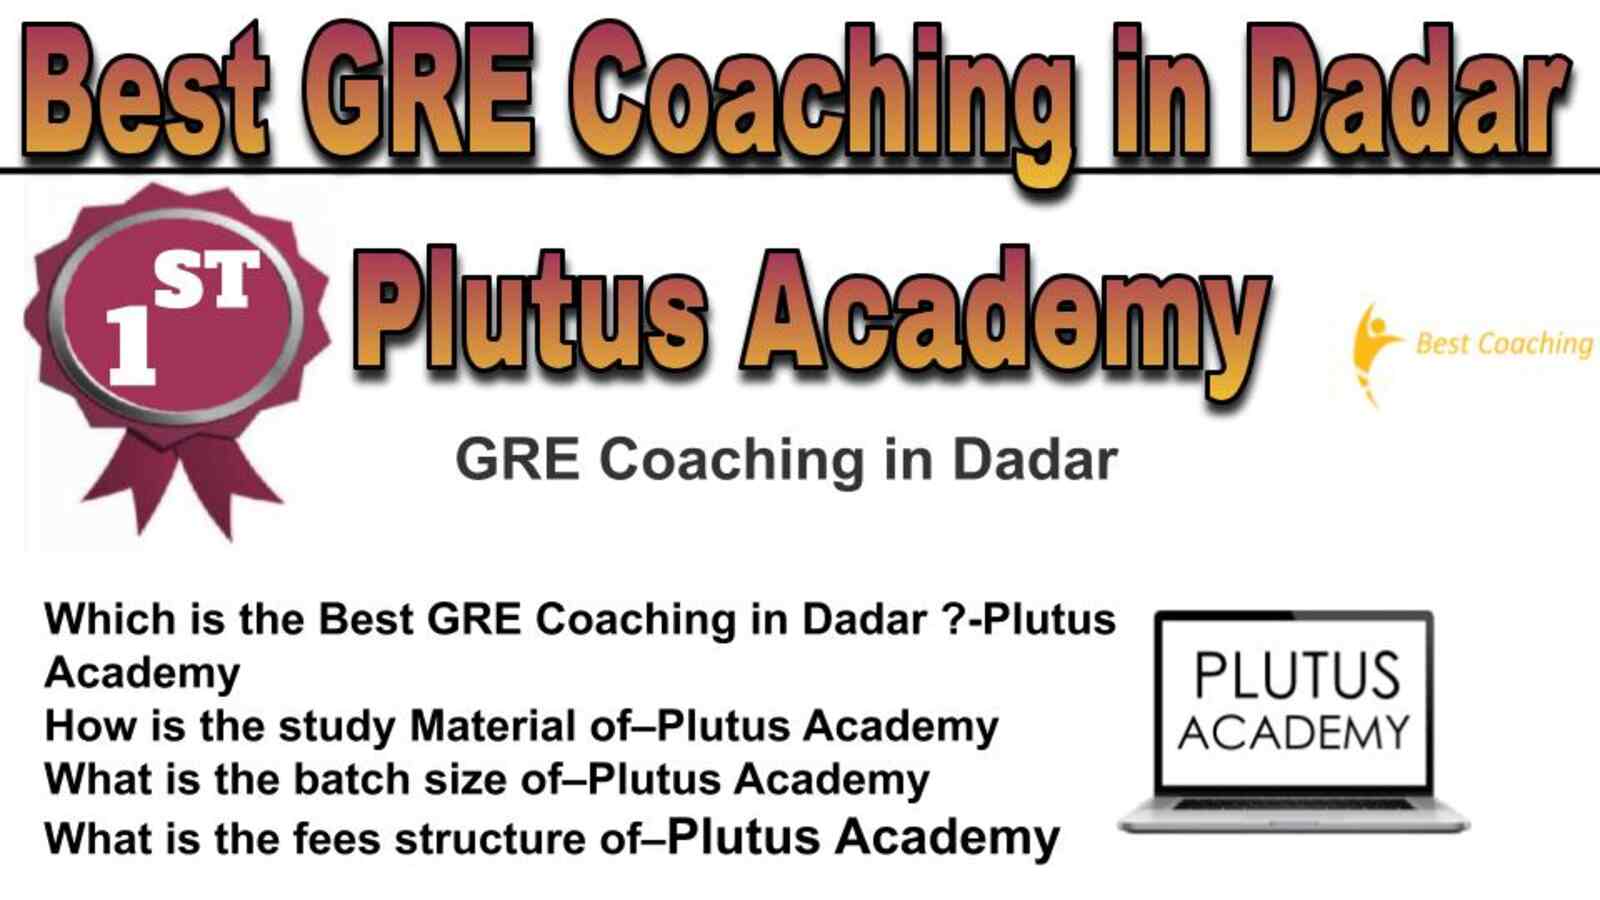 Rank 1 best GRE coaching in Dadar